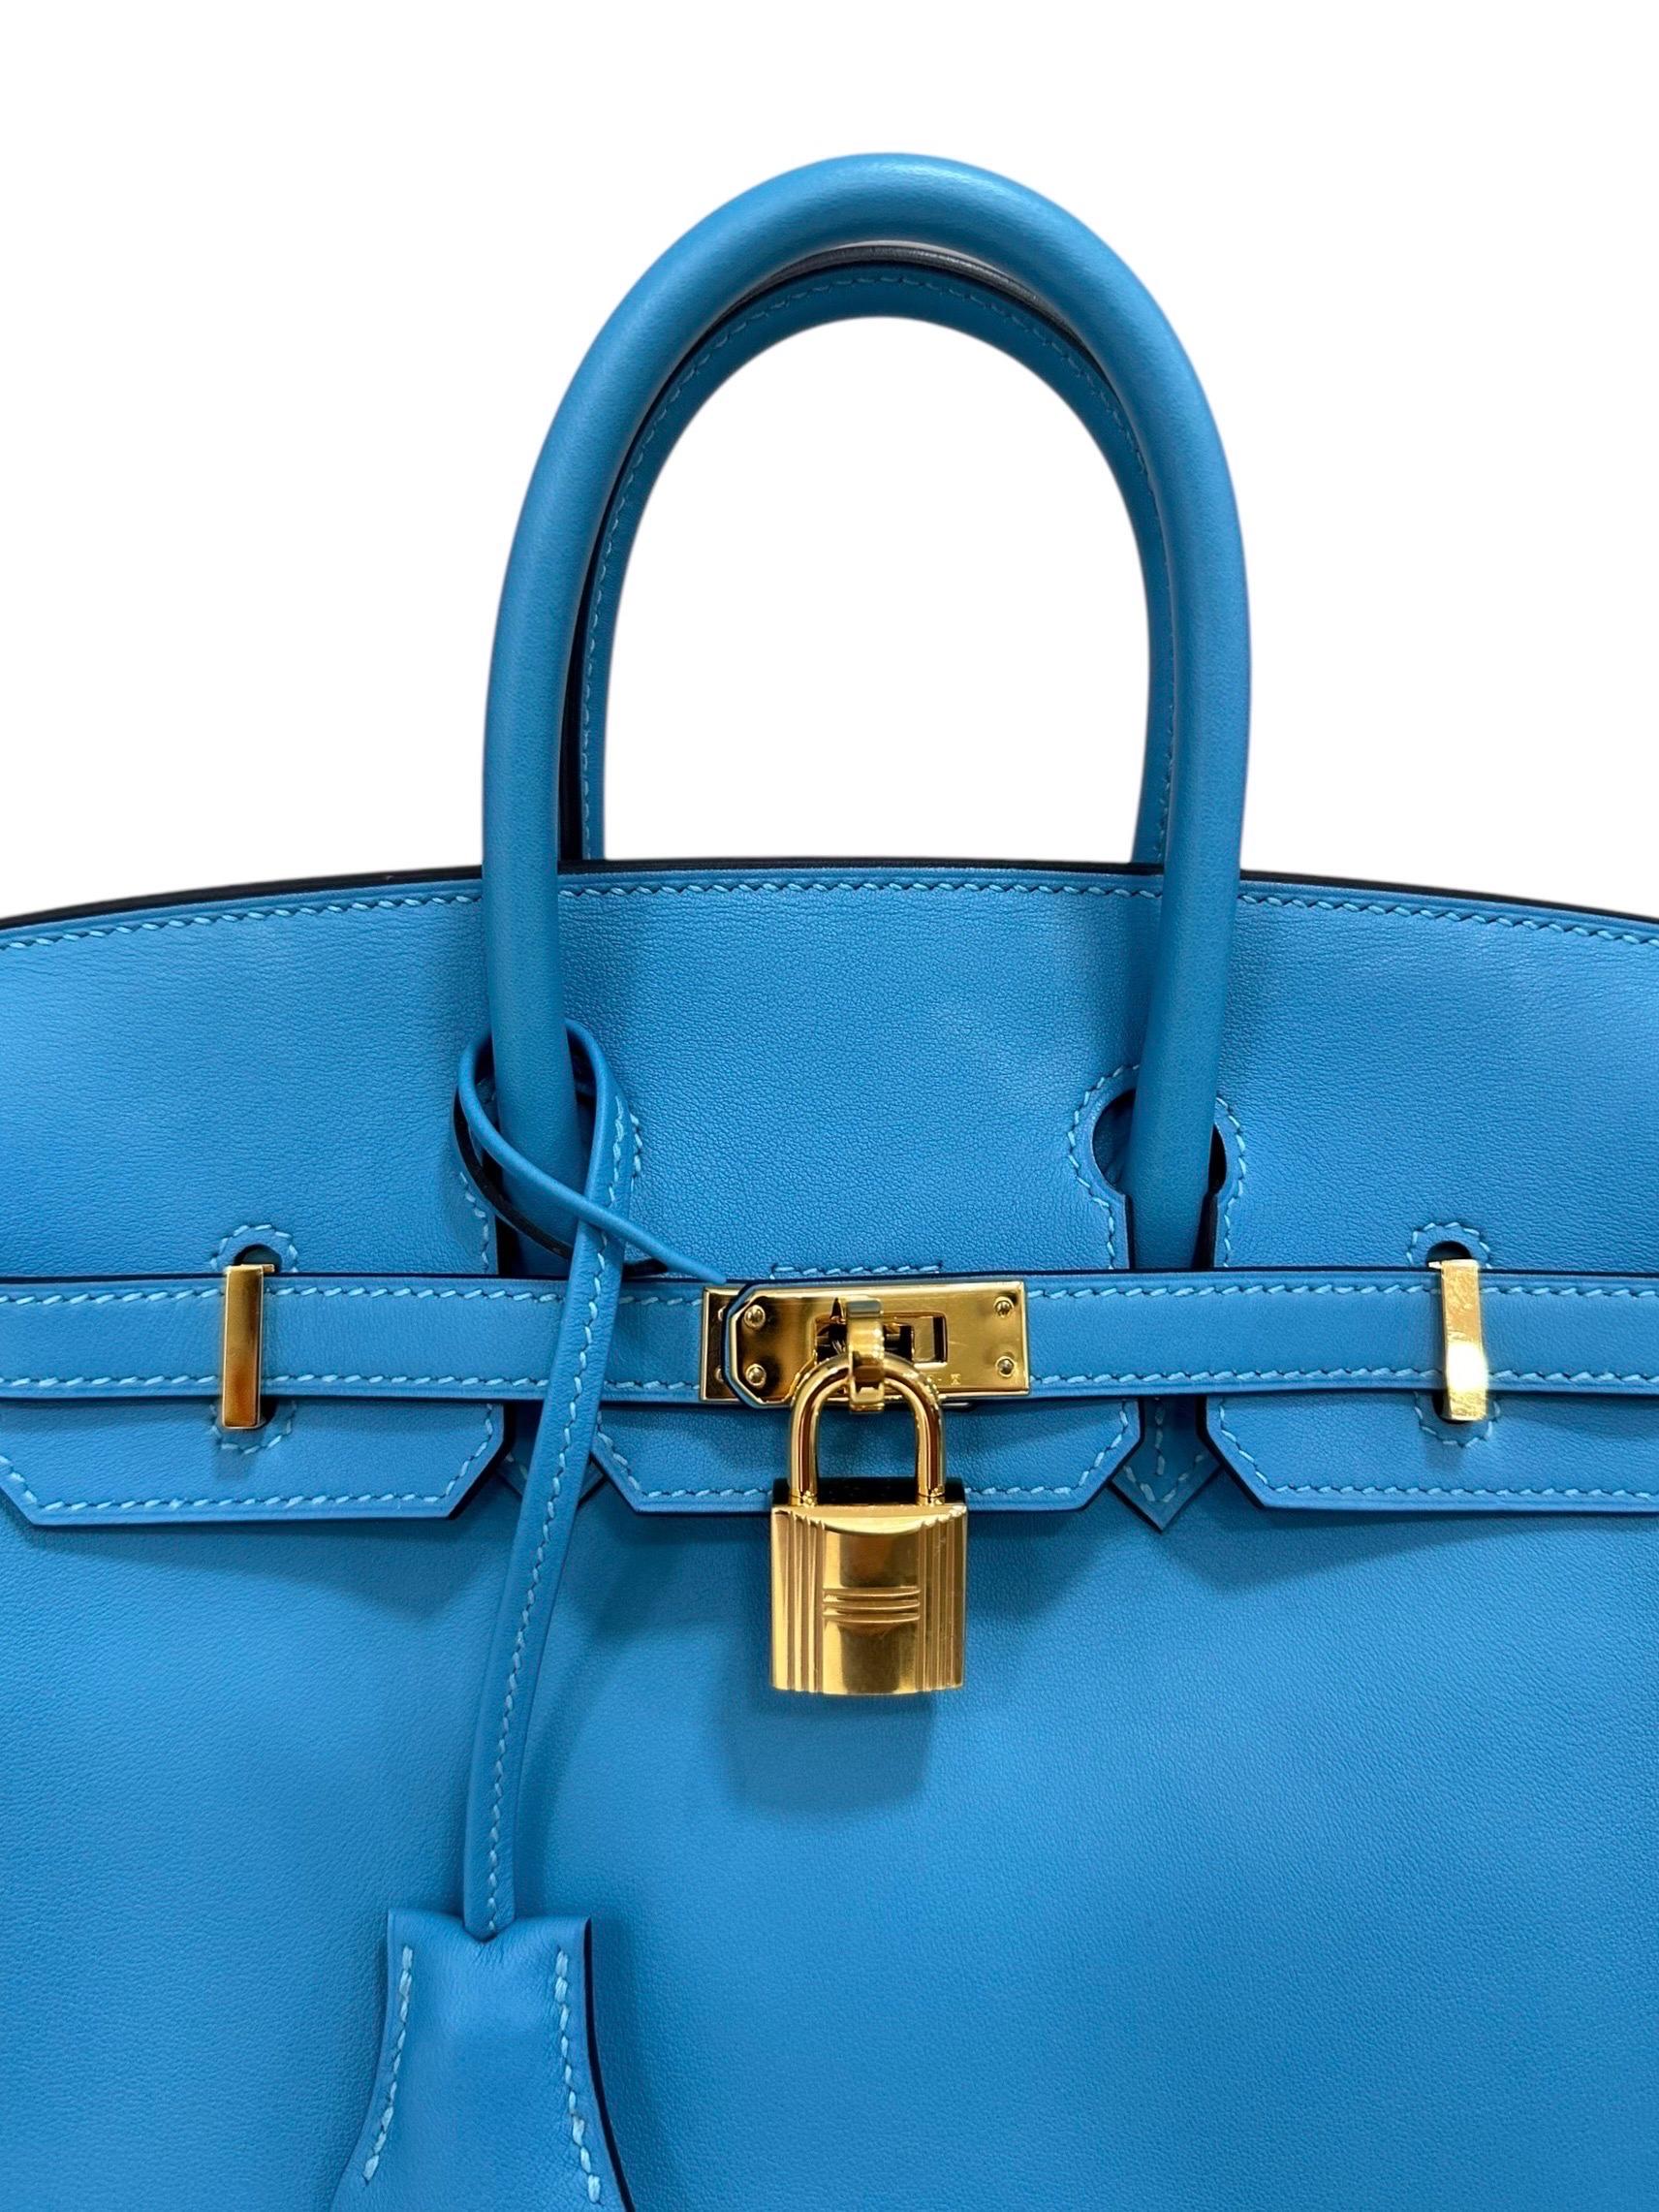 Borsa firmata Hermès, modello Birkin, misura 25, realizzata in pelle swift, liscia e morbida al tatto, colore Blue Izmir con hardware dorati. Dotata di una patta con chiusura a fascia orizzontale ad incastro, completa di clochette, lucchetto e